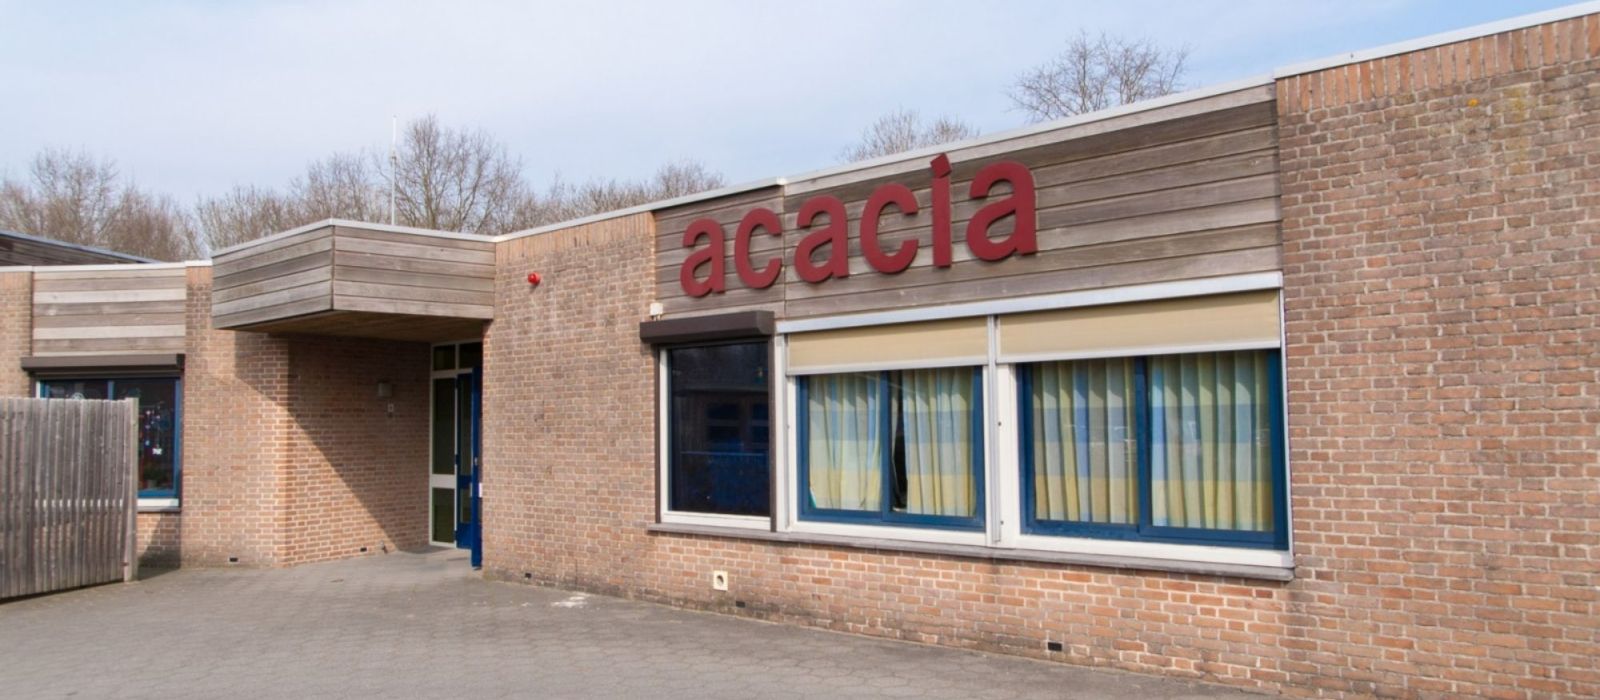 Woning woonlocatie Acacia 2 in Nieuwveen